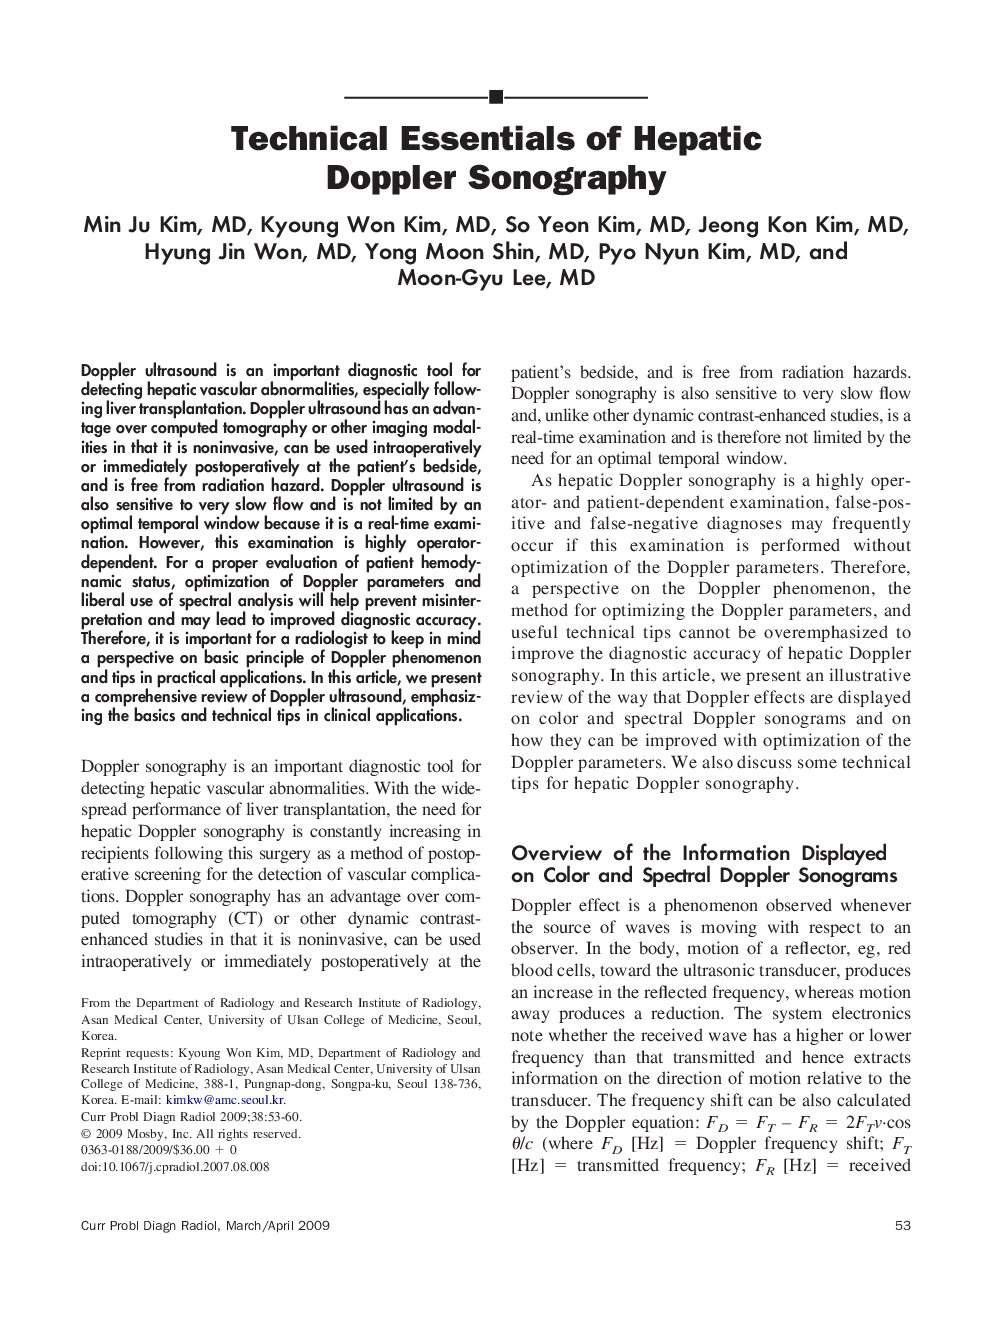 Technical Essentials of Hepatic Doppler Sonography